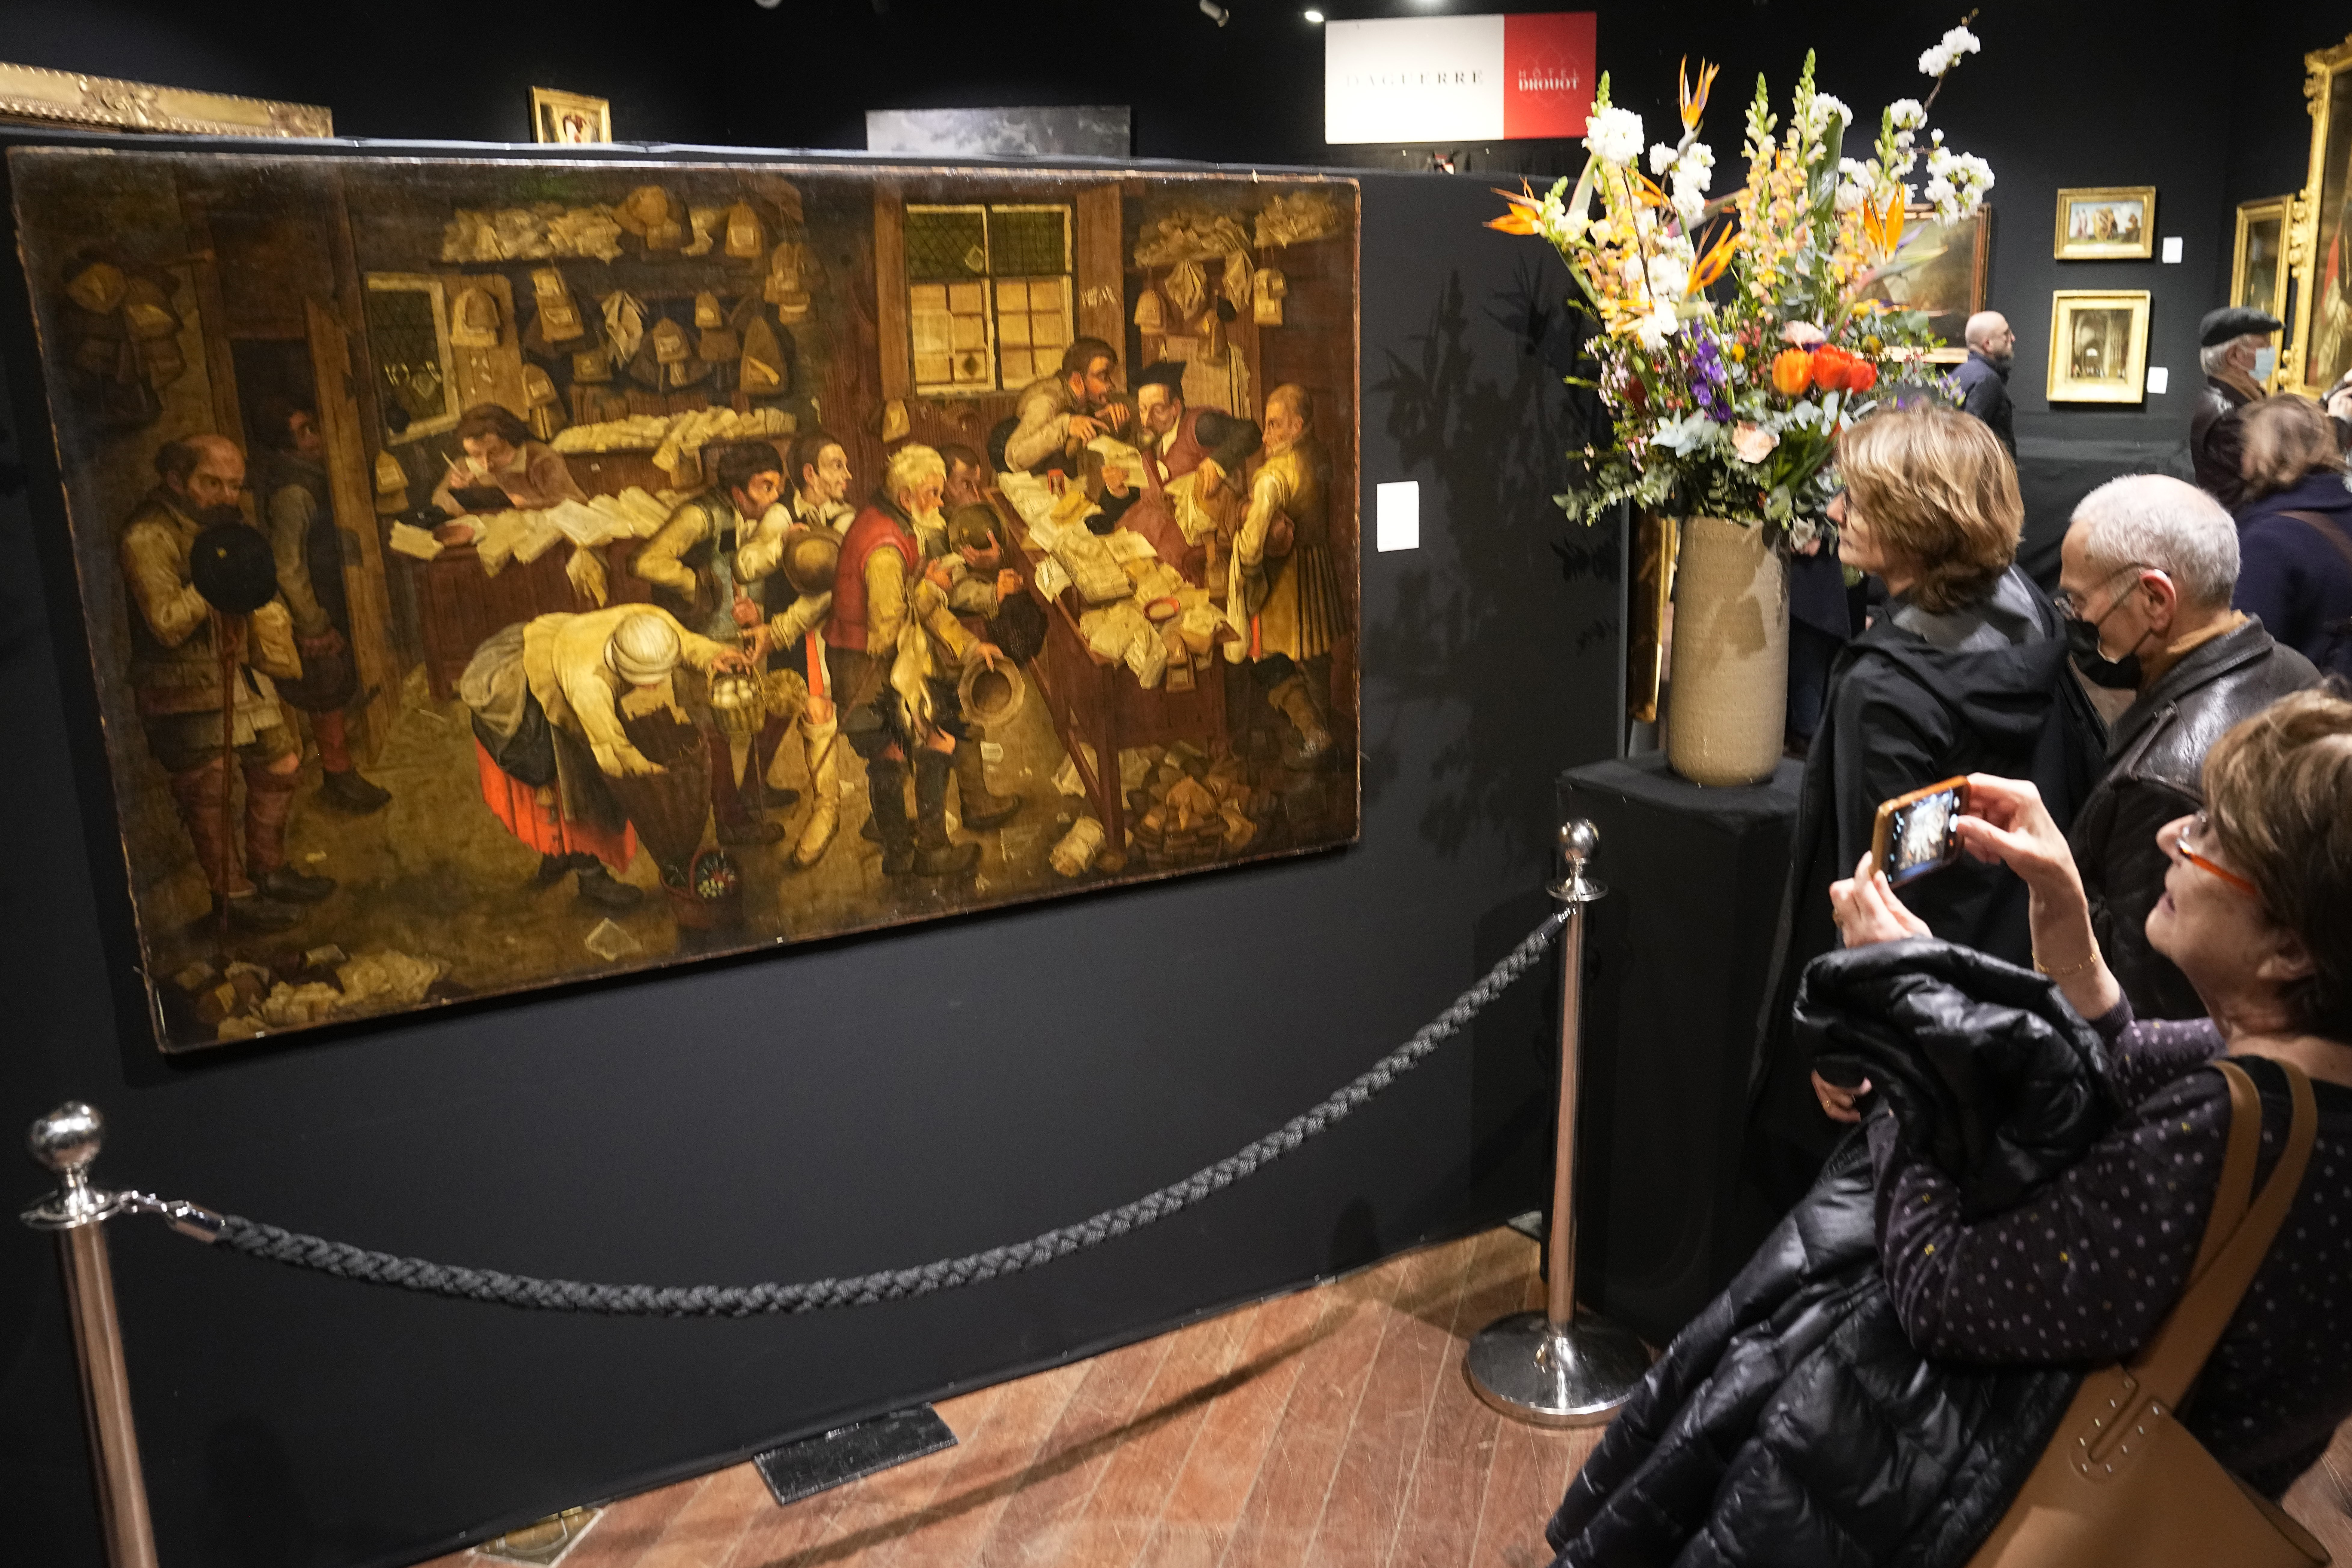 Los visitantes pudieron ver la pintura de Pieter Brueghel el Joven en la casa de subastas Drouot en París (AP/Michel Euler)